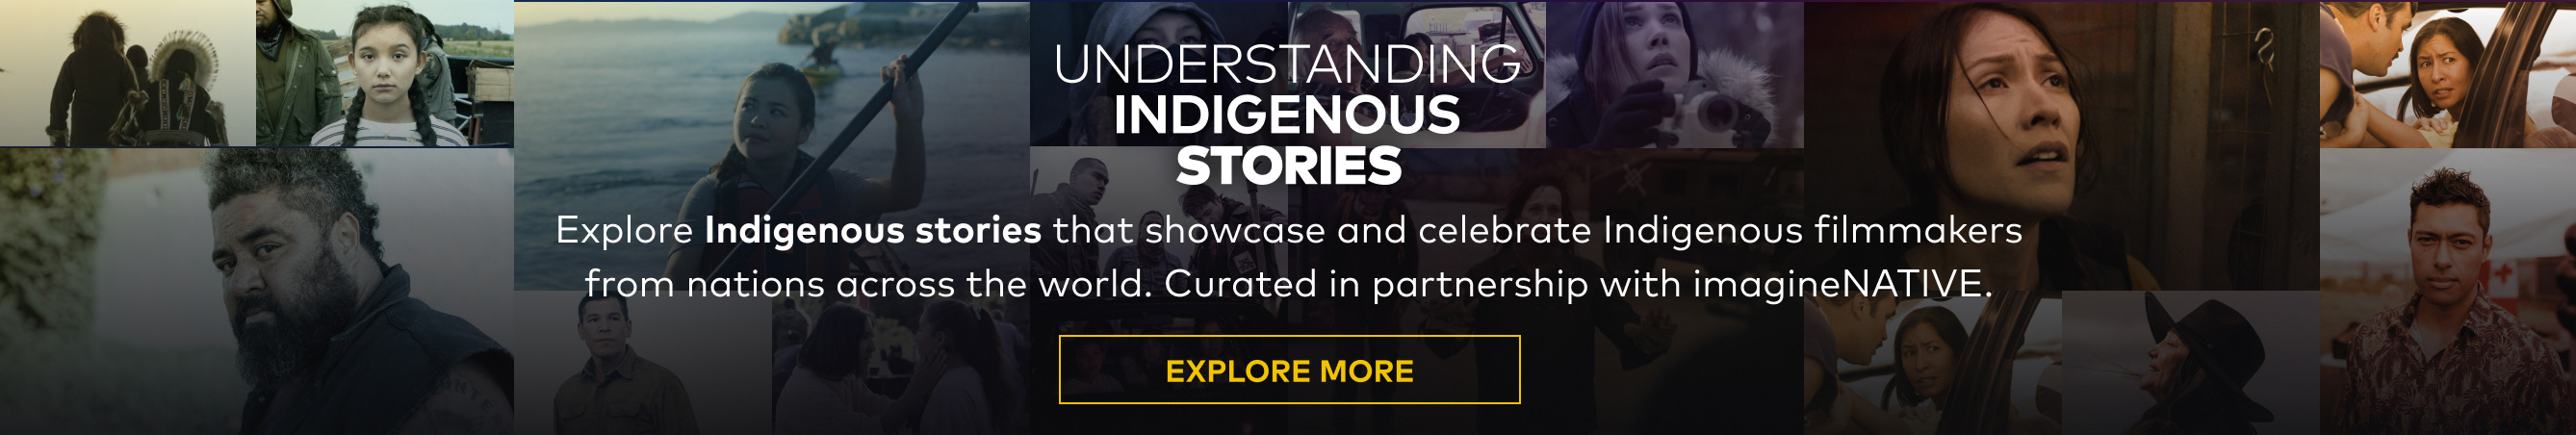 Understanding Indigenous Stories